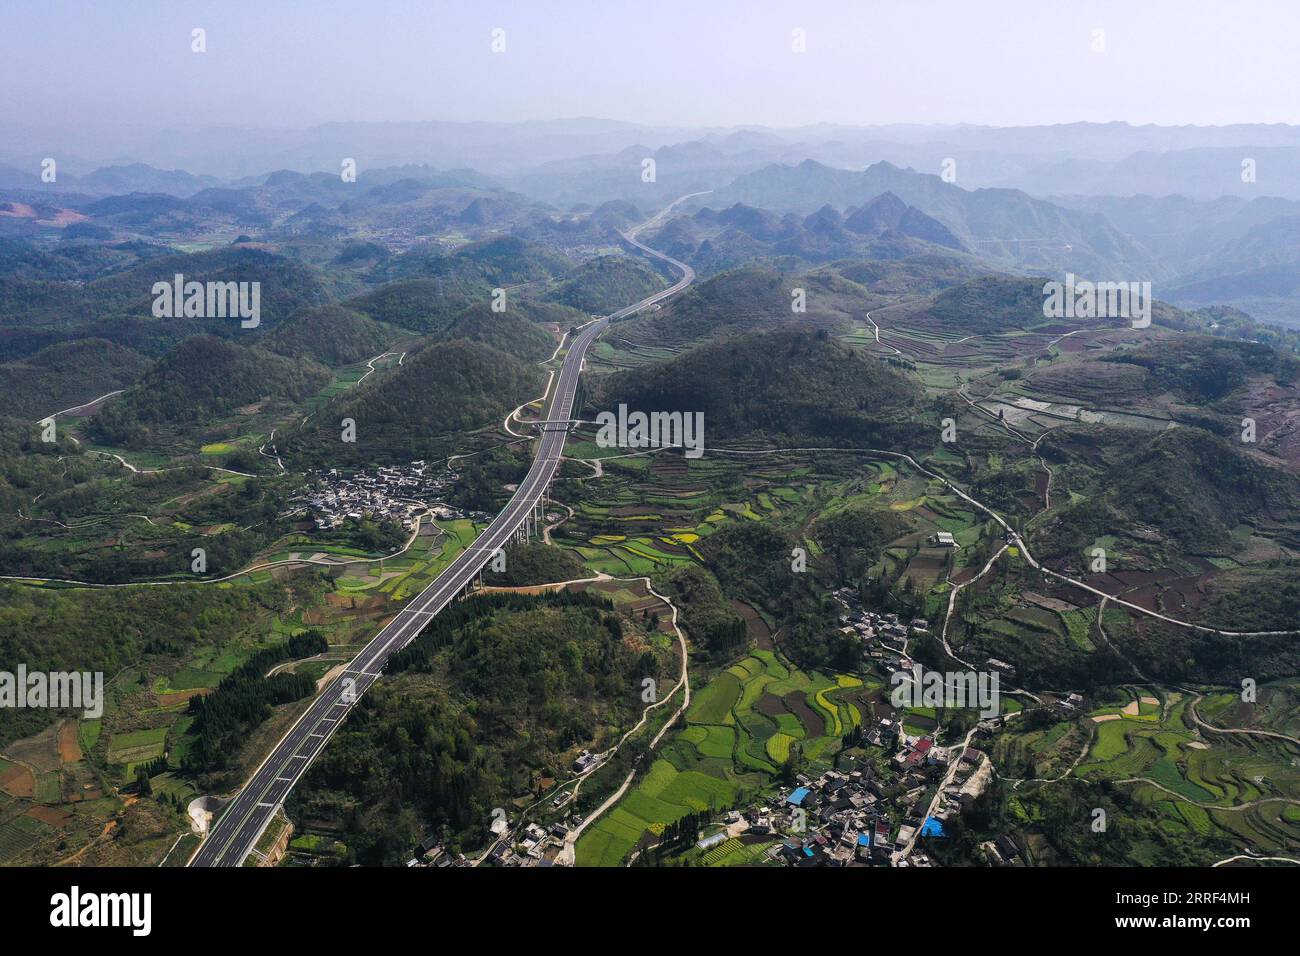 220328 -- GUIDING, 28. März 2022 -- Luftaufnahme aufgenommen am 28. März 2022 zeigt einen Abschnitt des Guiyang-Huangping Highway in Guiding County, südwestchinesische Provinz Guizhou. Der Bau der Hauptstrecke des Guiyang-Huangping Highway ist in die letzte Phase eingetreten und soll in diesem Jahr abgeschlossen werden. Die Hauptstrecke dieser Autobahn erstreckt sich über 120,6 Kilometer und wird Guizhou mit dem Yangtze-Delta verbinden. CHINA-GUIZHOU-GUIYANG-HUANGPING-HIGHWAY CN YANGXWENBIN PUBLICATIONXNOTXINXCHN Stockfoto